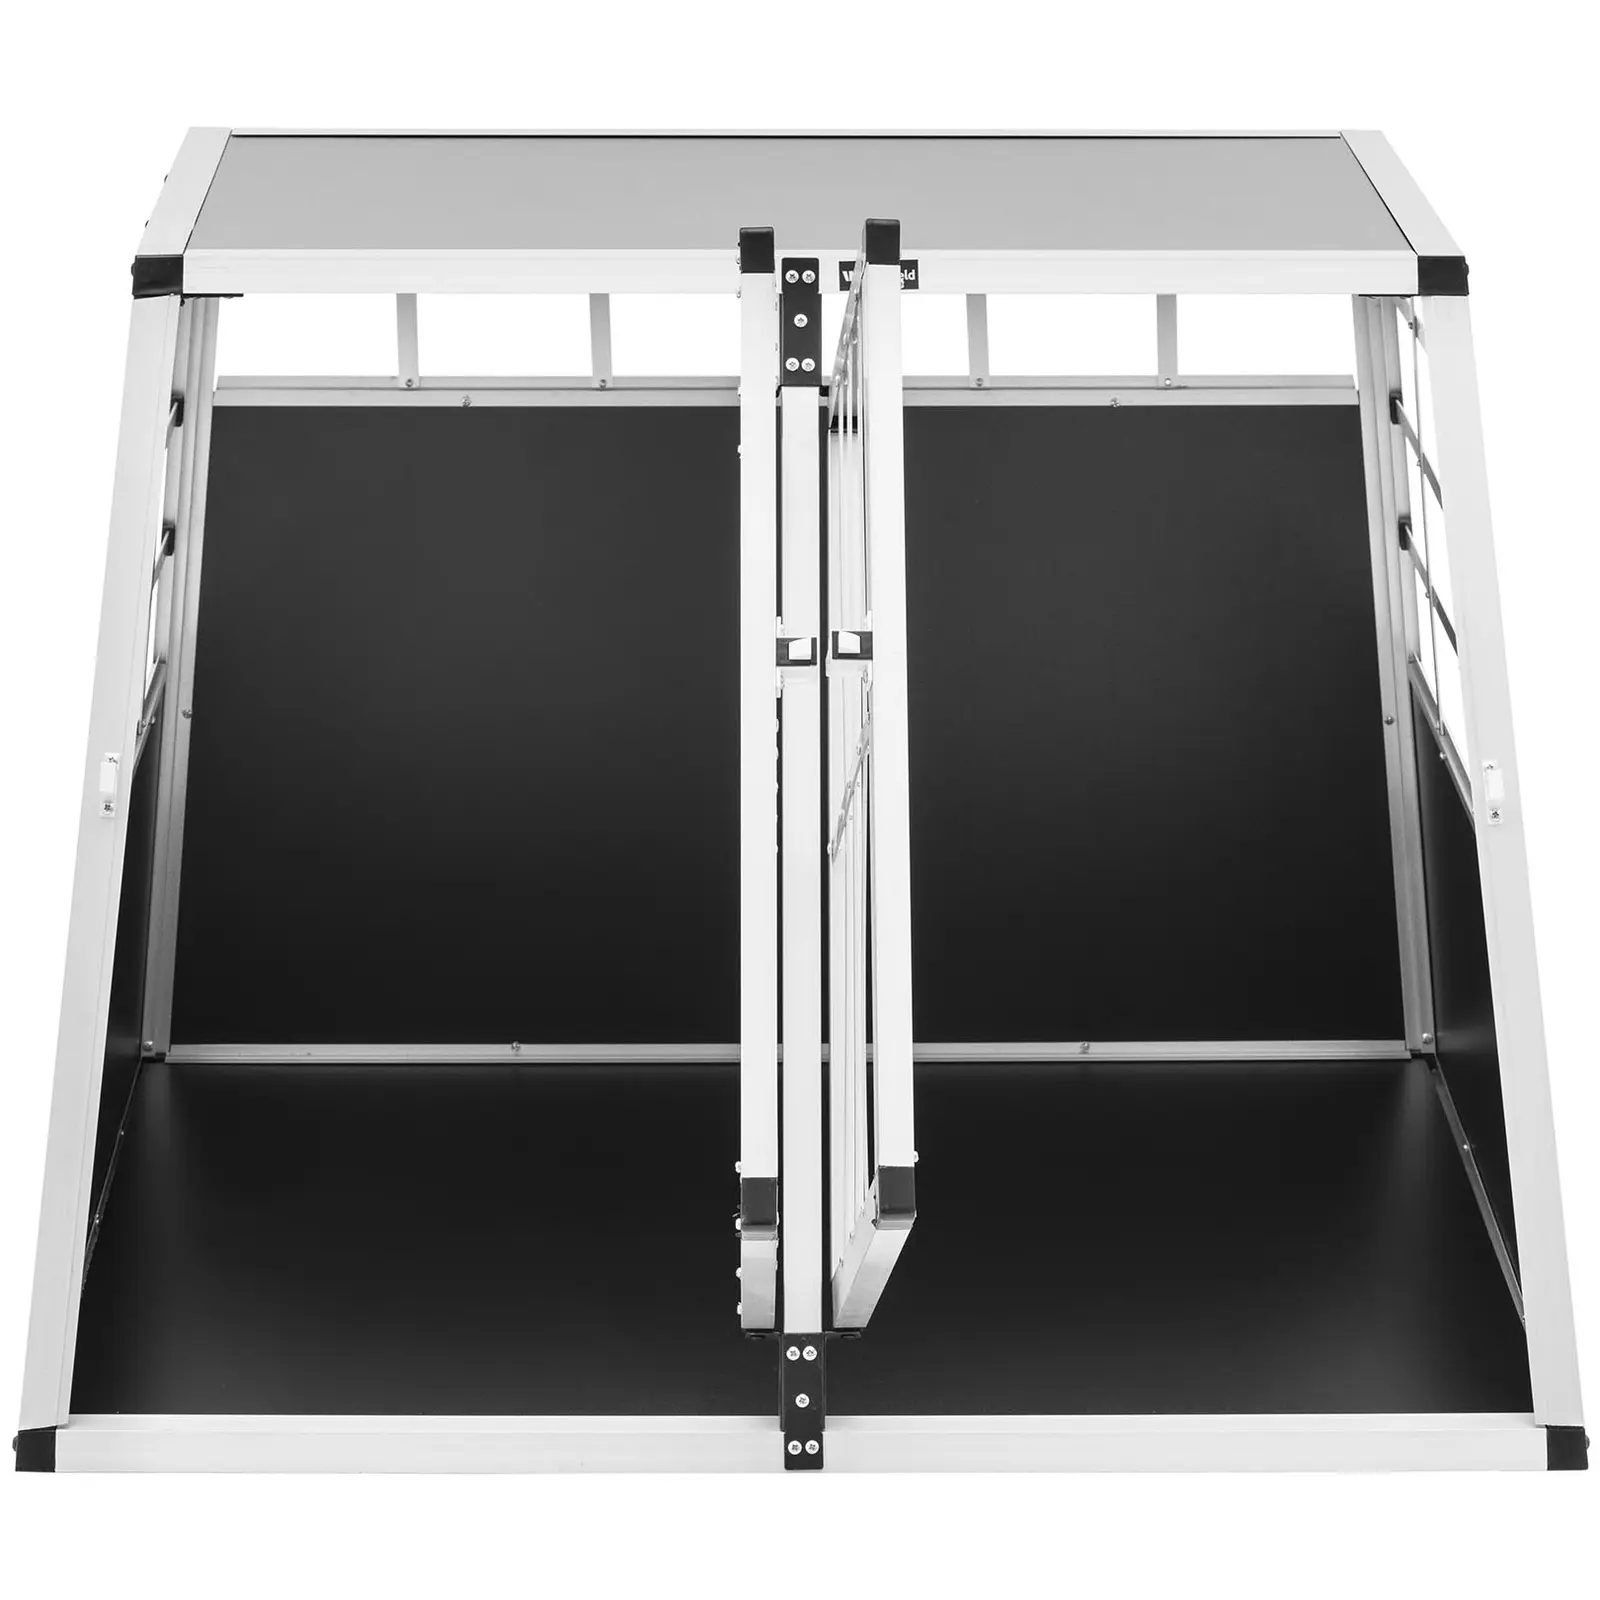 Caja transportadora de perros - aluminio - trapezoidal - 85 x 95 x 69 cm